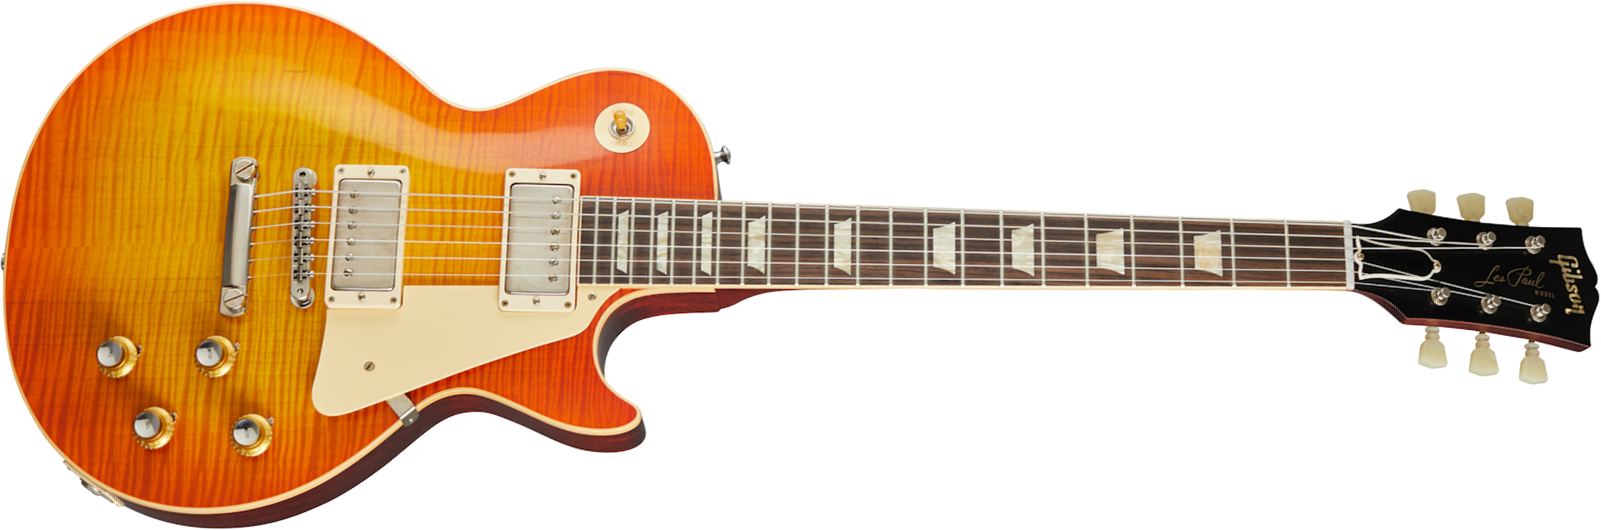 Gibson Custom Shop Les Paul Standard 1960 V2 60th Anniversary 2h Ht Rw - Vos Orange Lemon Fade - Guitare Électrique Single Cut - Main picture